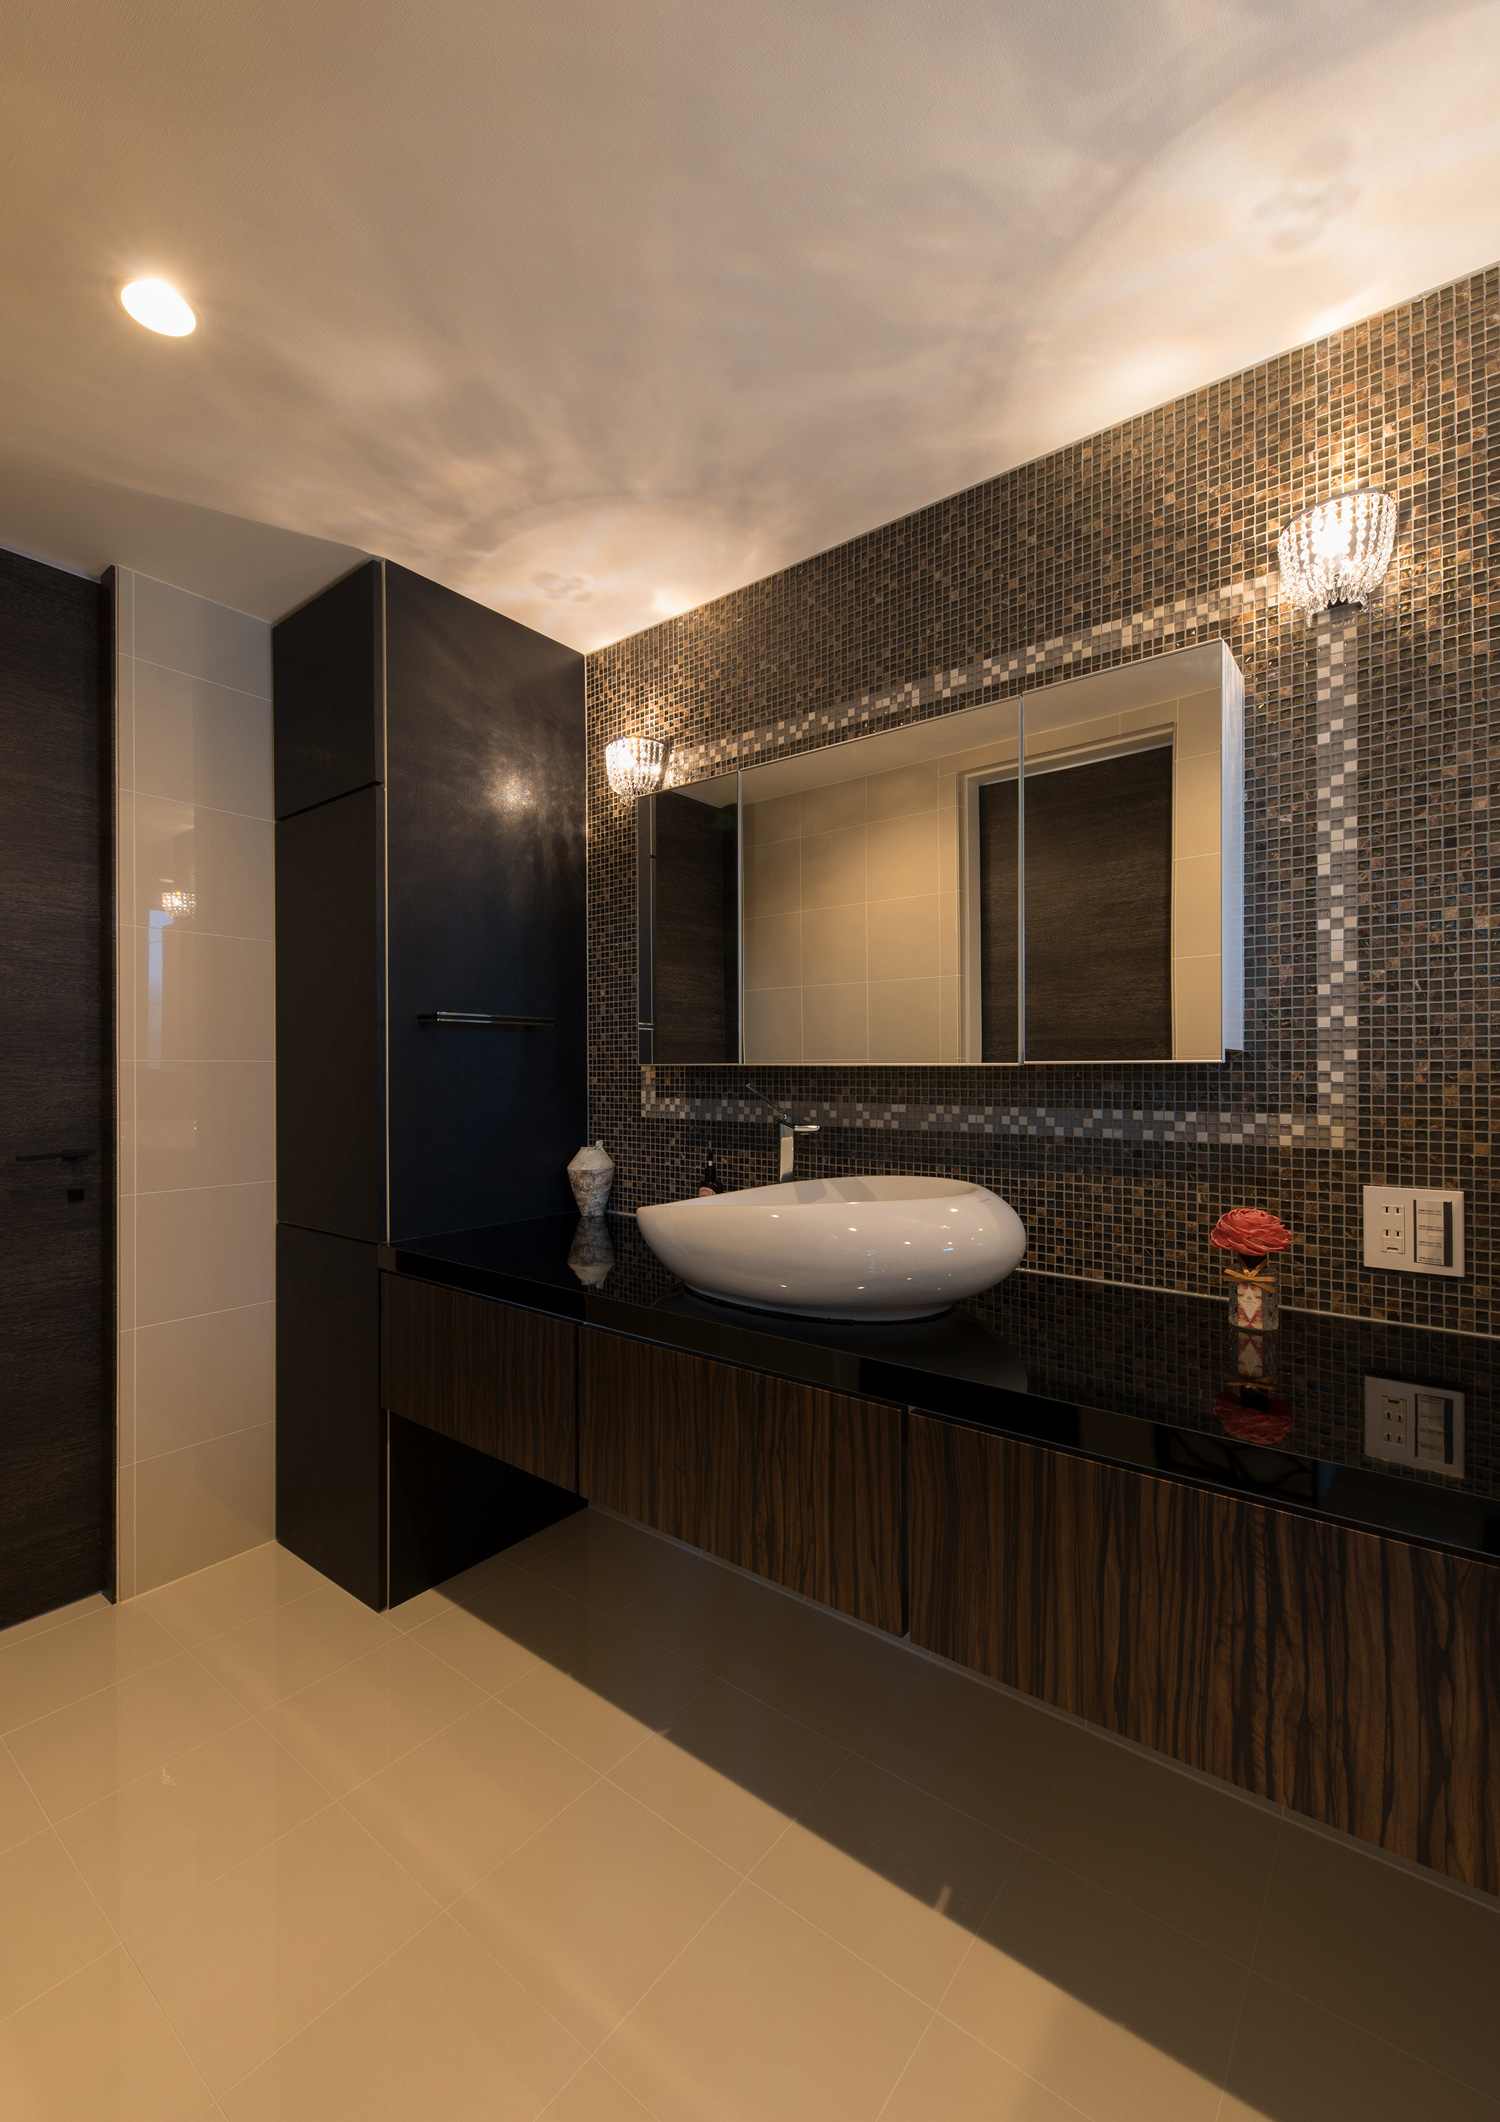 黒いタイルの壁に鏡を取り付けた黒い洗面台の洗面所・デザイン住宅